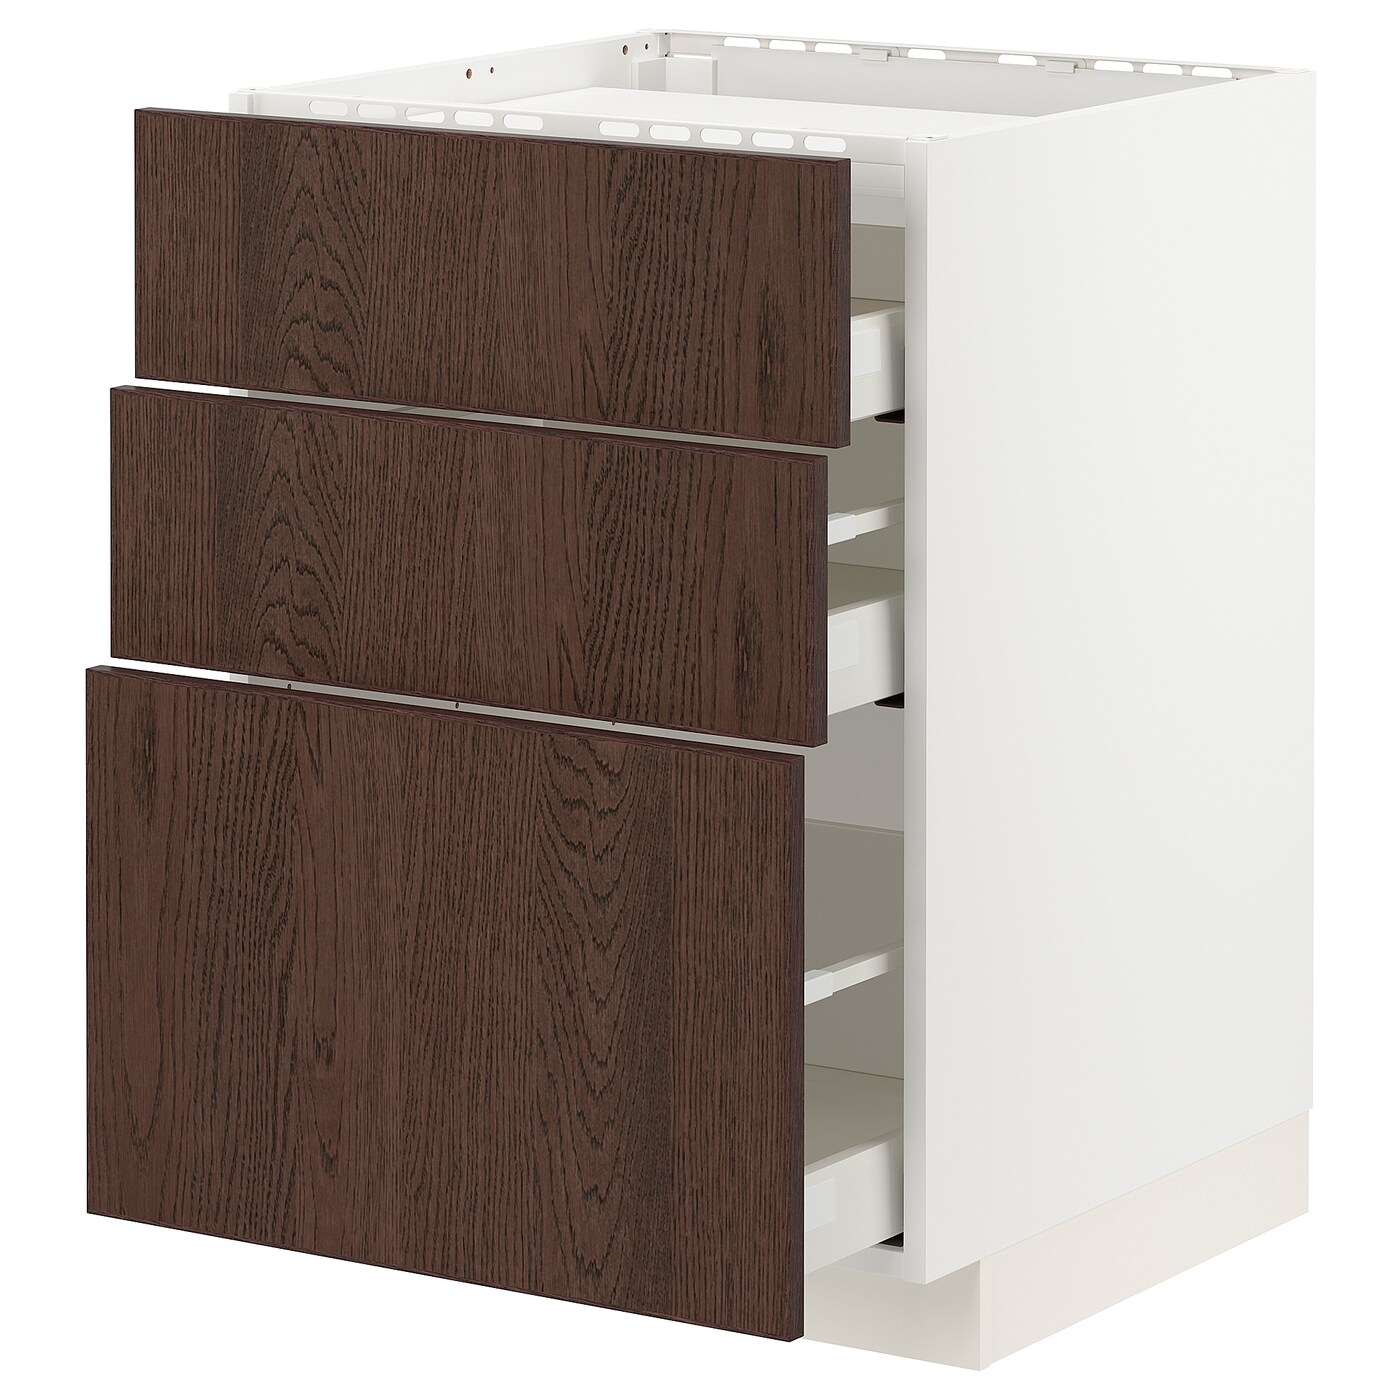 Напольный кухонный шкаф  - IKEA METOD MAXIMERA, 88x61,6x60см, белый/коричневый, МЕТОД МАКСИМЕРА ИКЕА